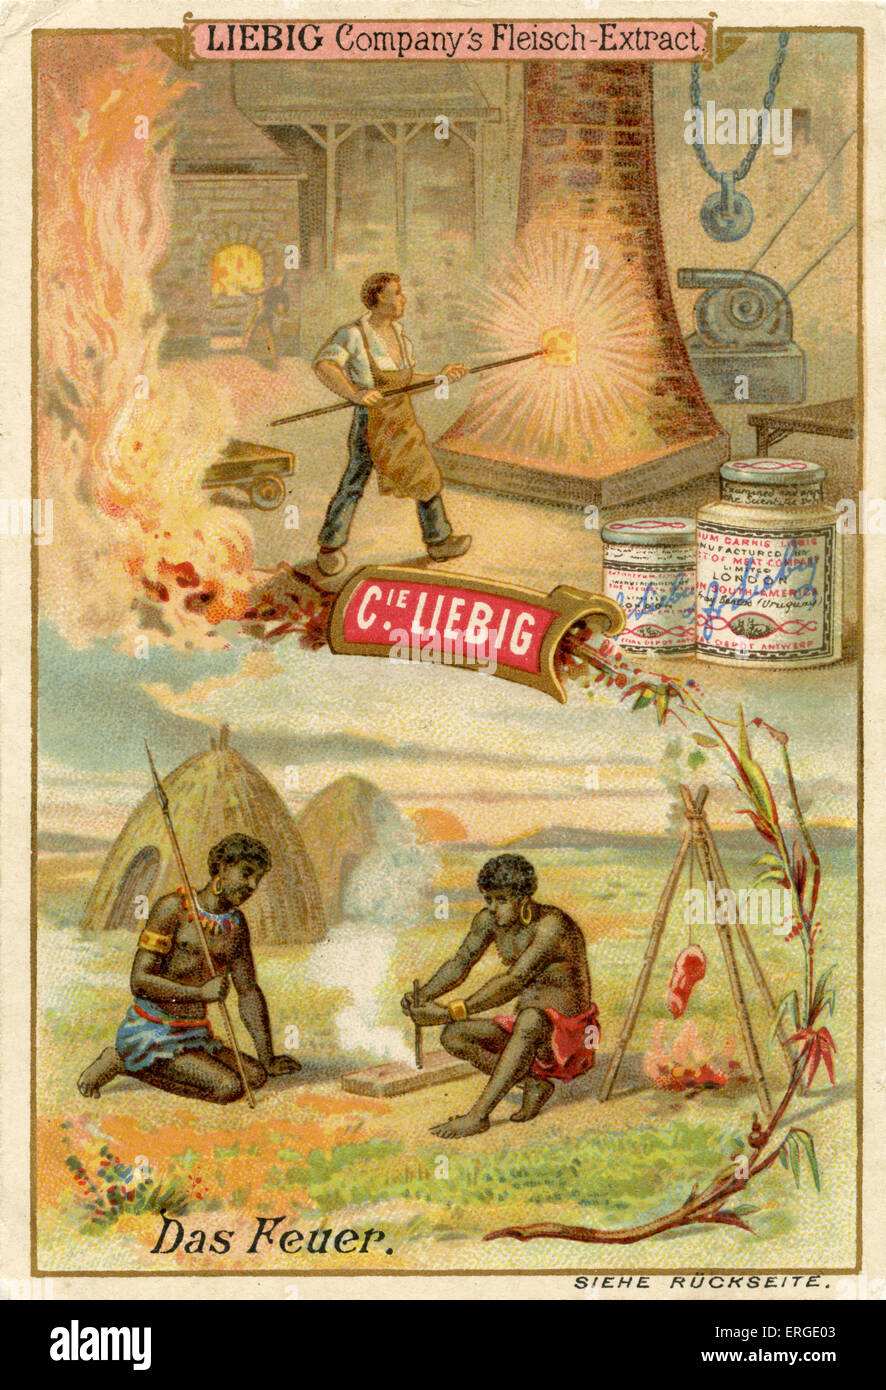 Fire ('Dcome Feuer') - Società di Liebig carte collezionabili, risorse naturali serie. Pubblicato nel 1892. Foto Stock